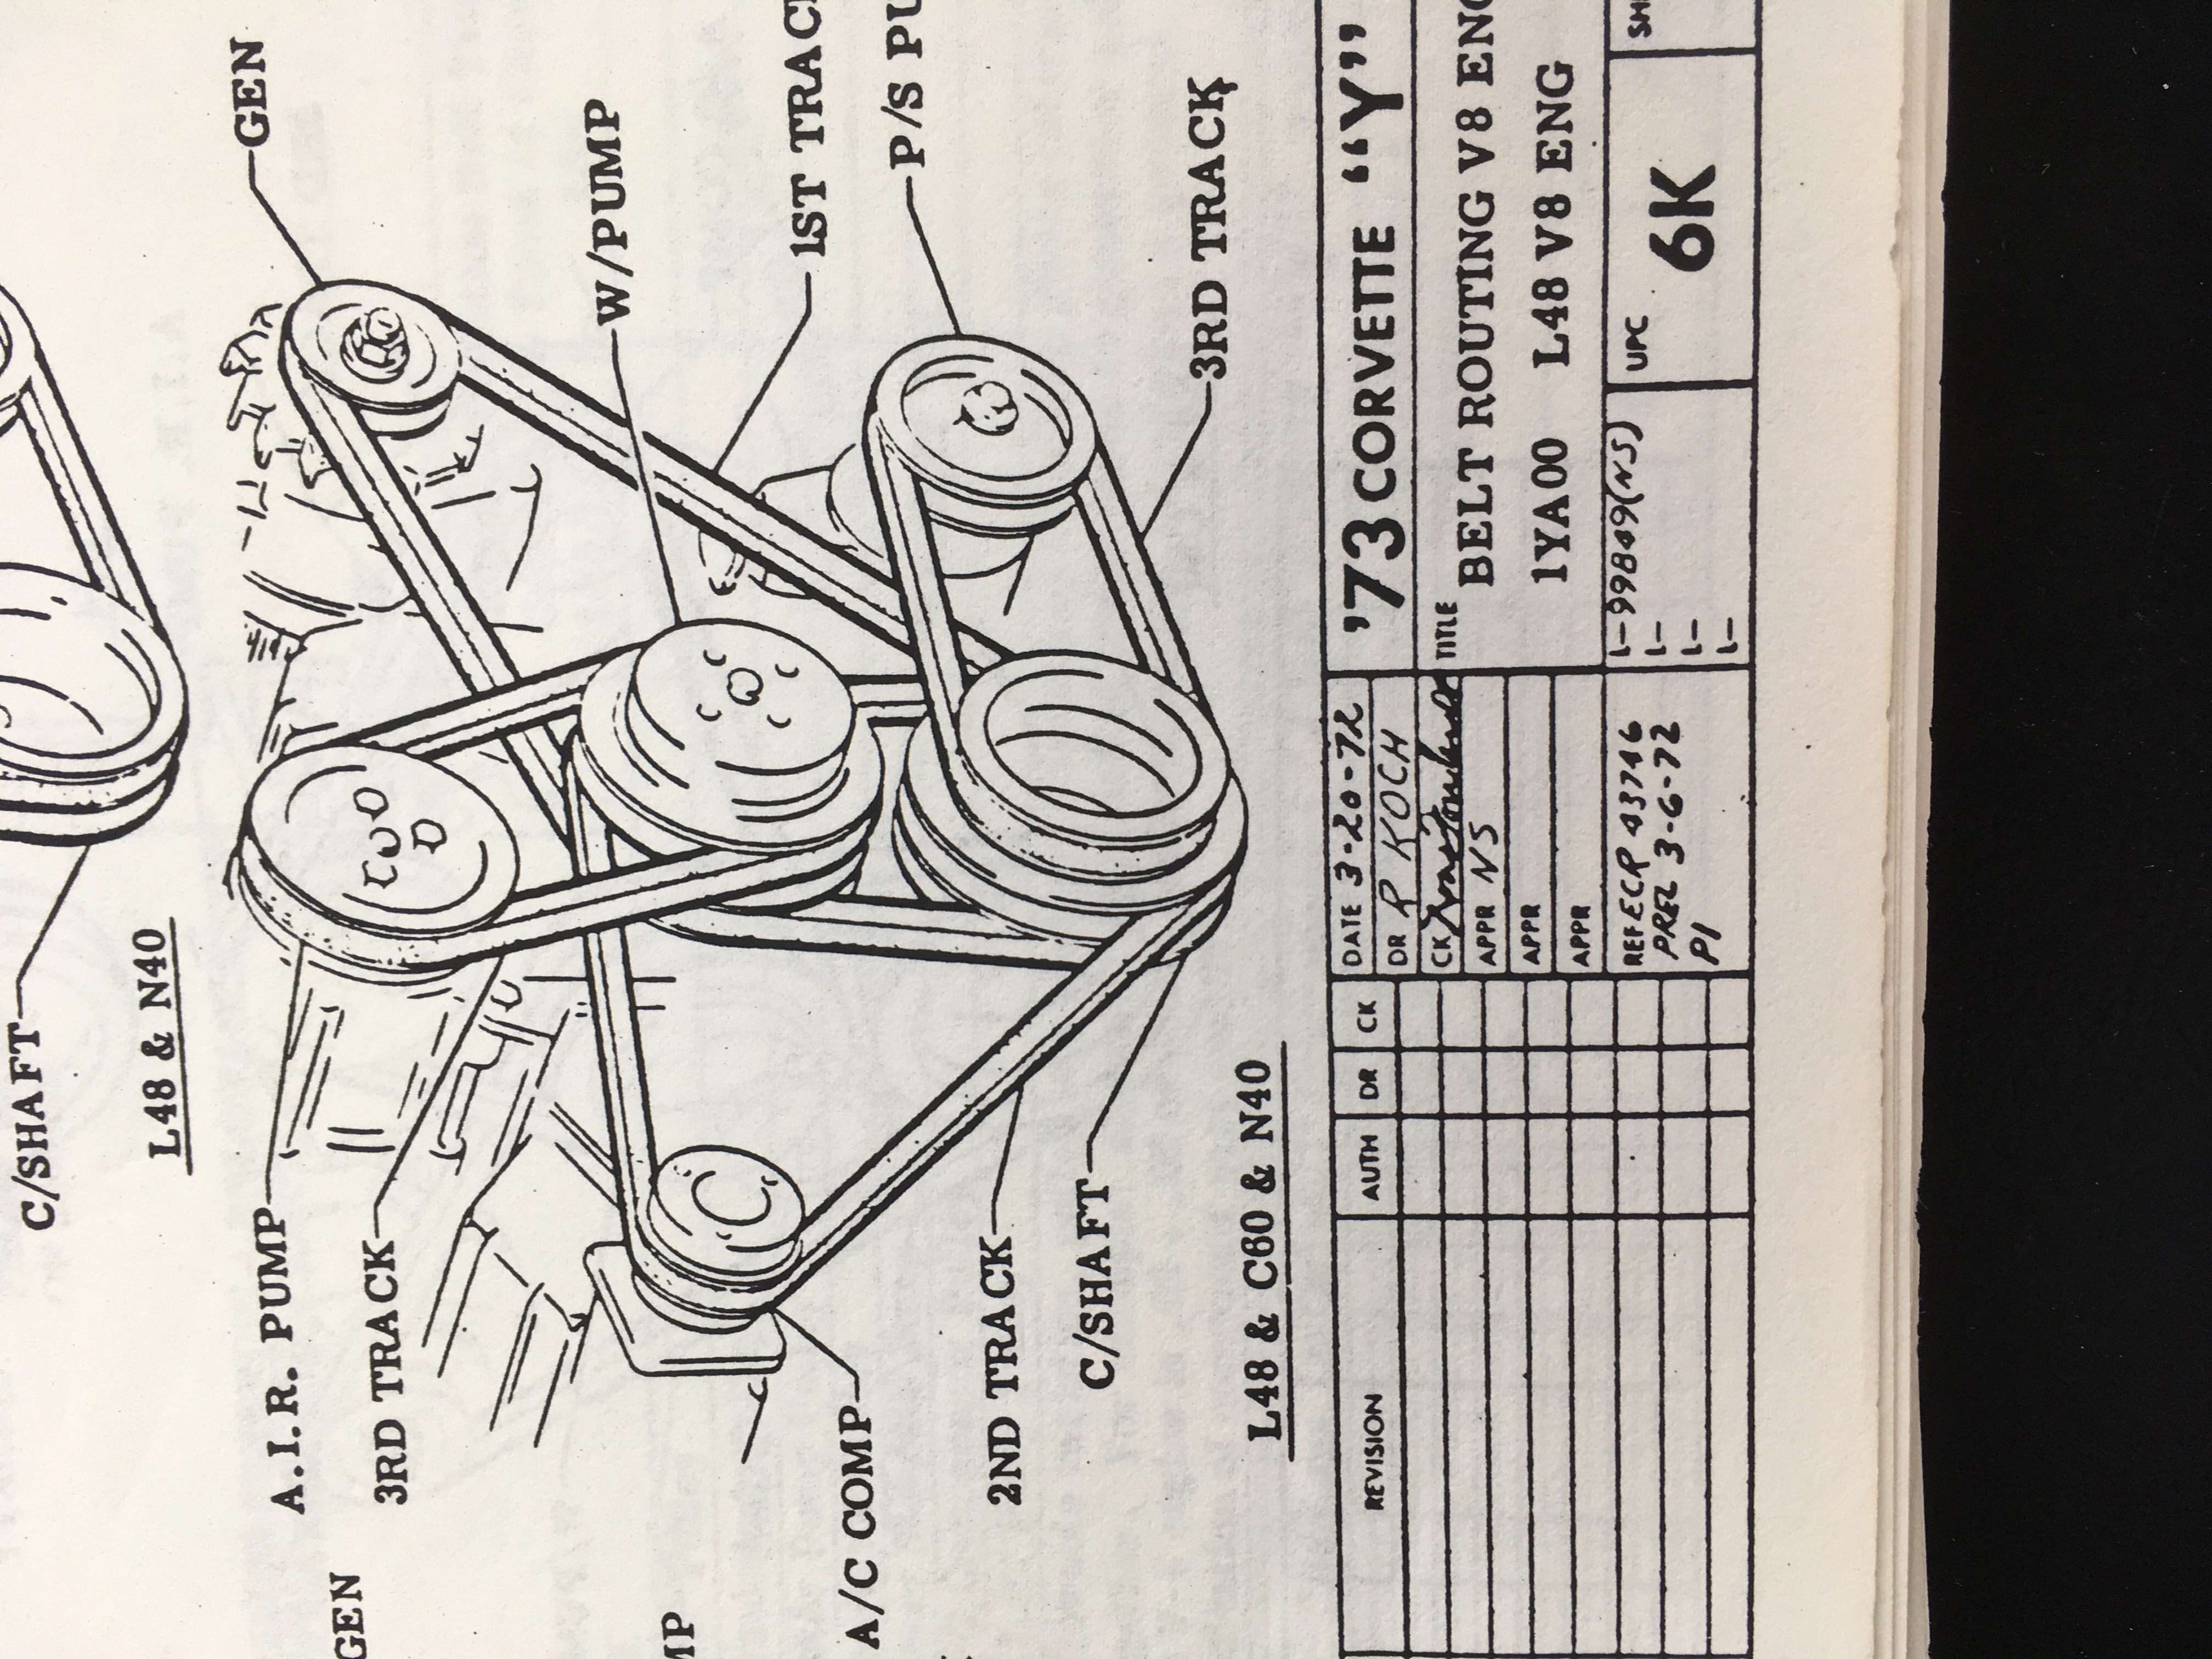 [DIAGRAM in Pictures Database] 1984 Corvette Engine Diagram Just